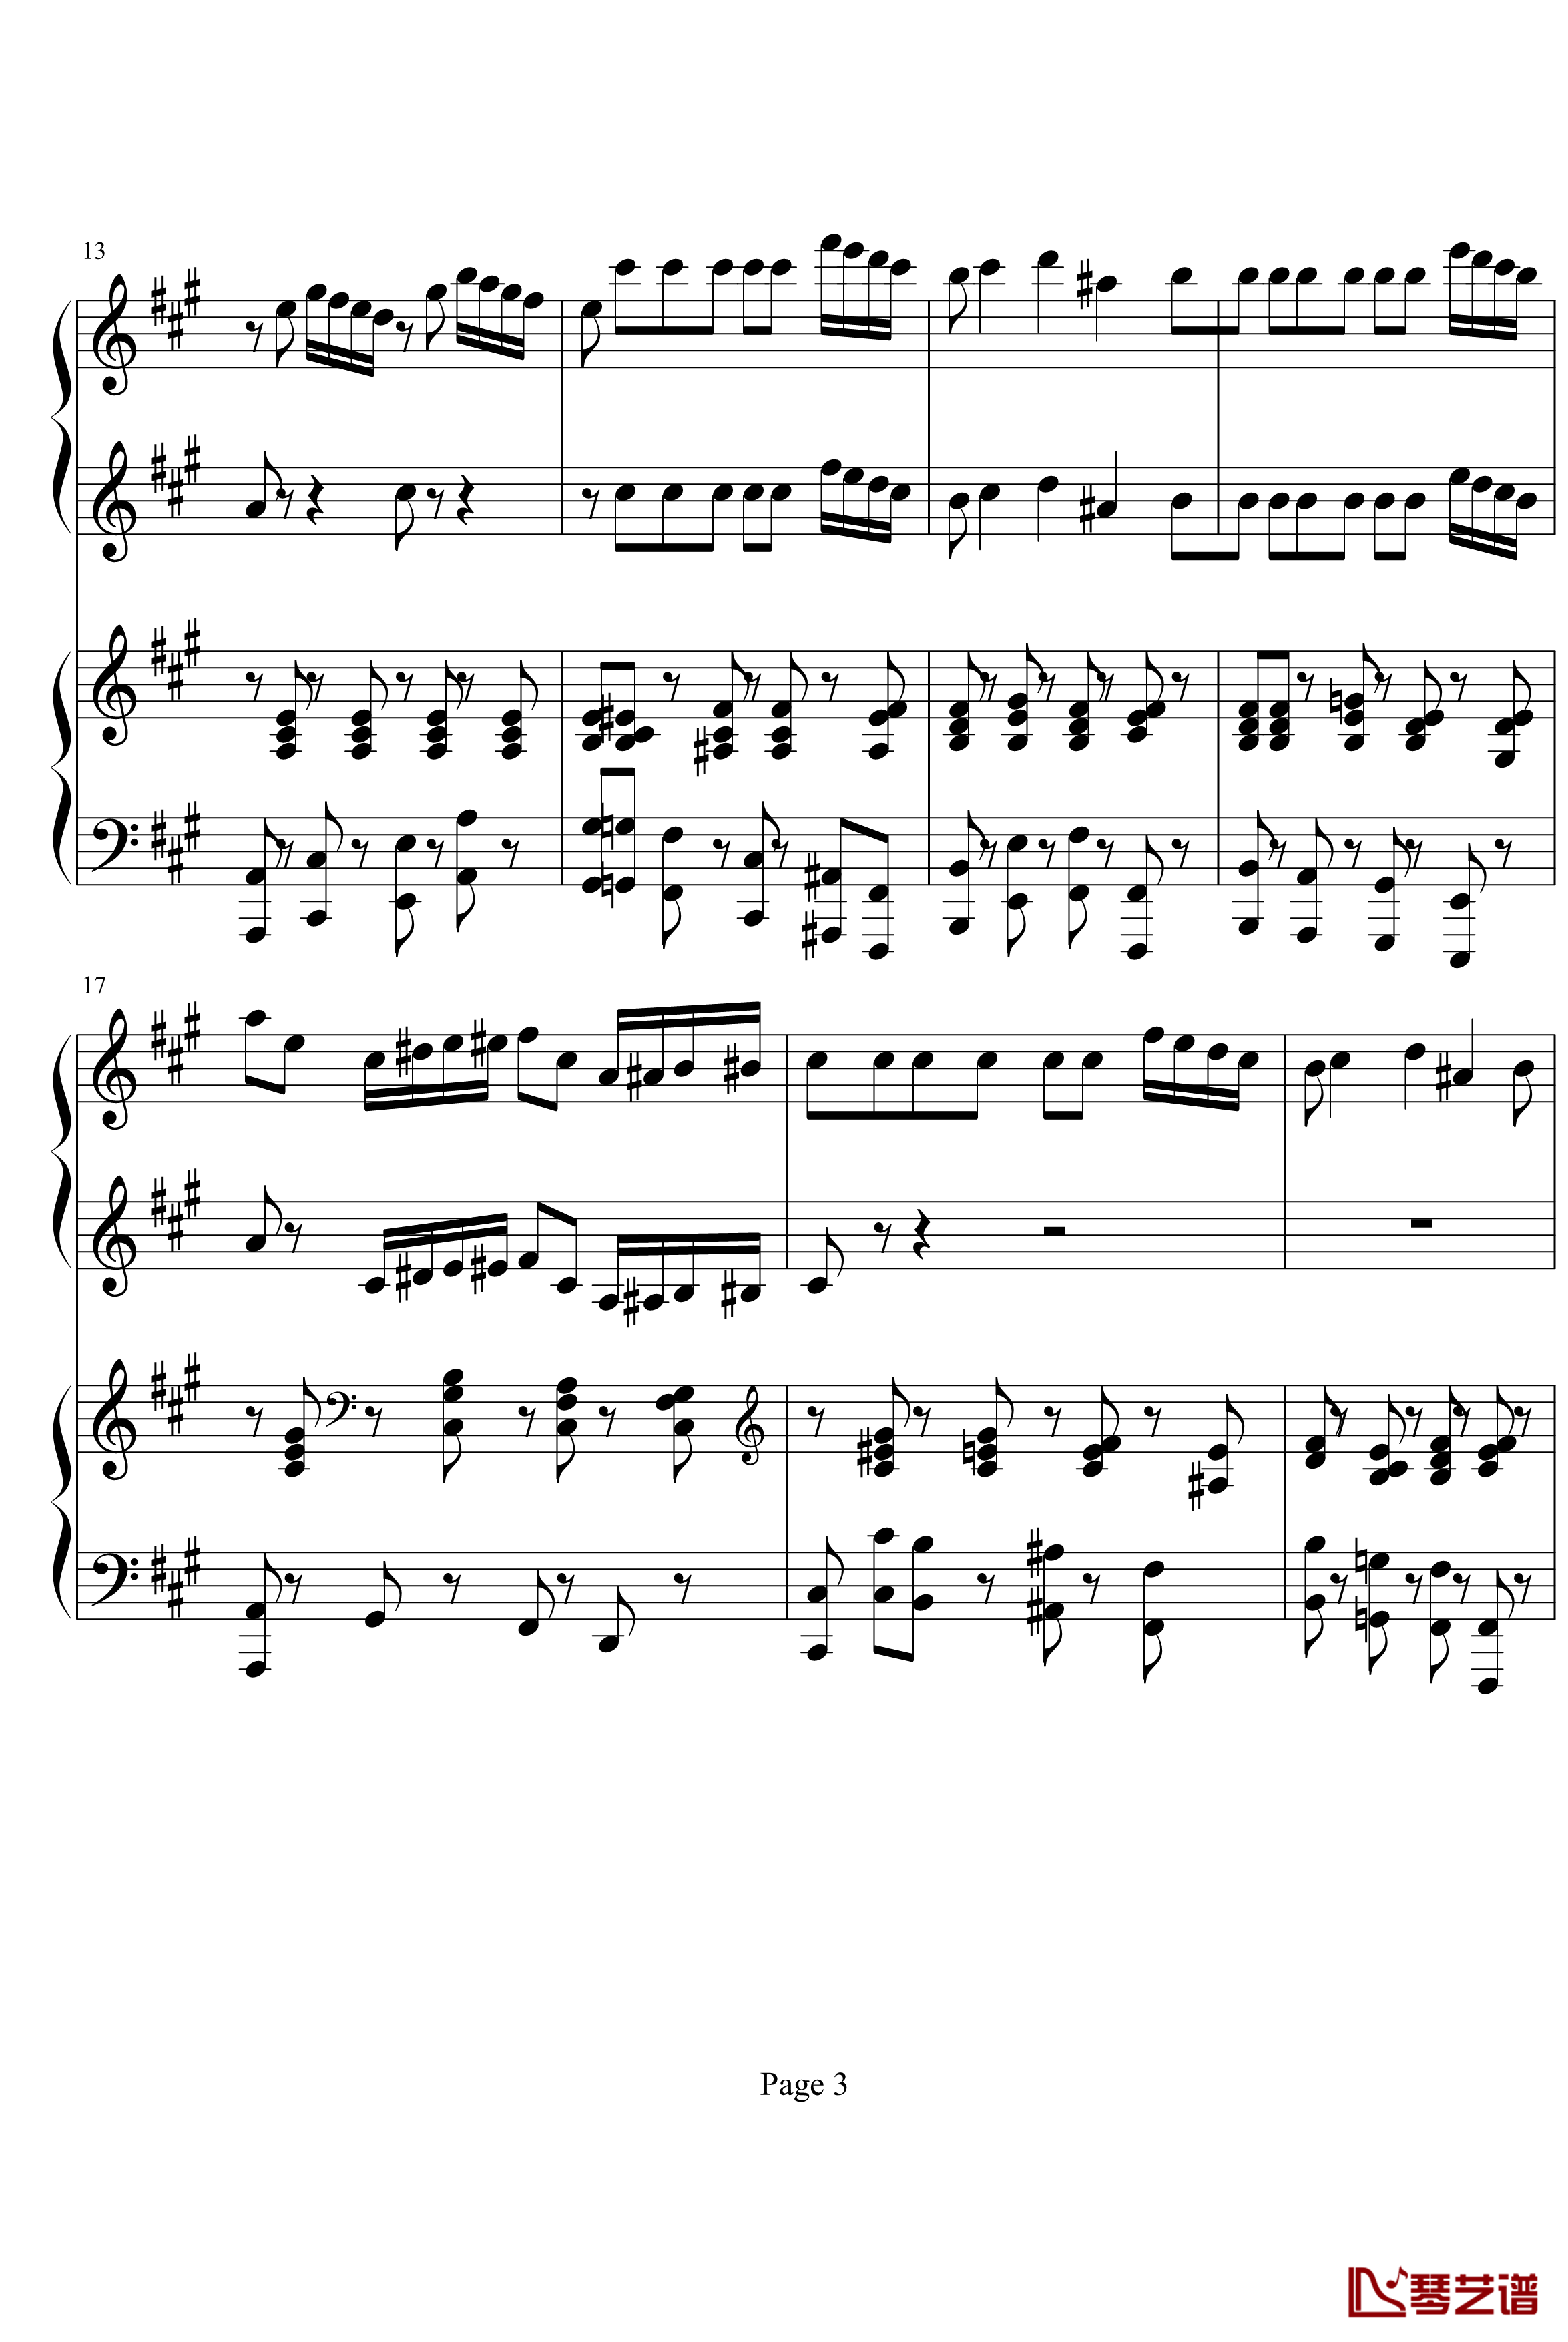 四小天鹅舞曲钢琴谱-柴科夫斯基-四手联弹版